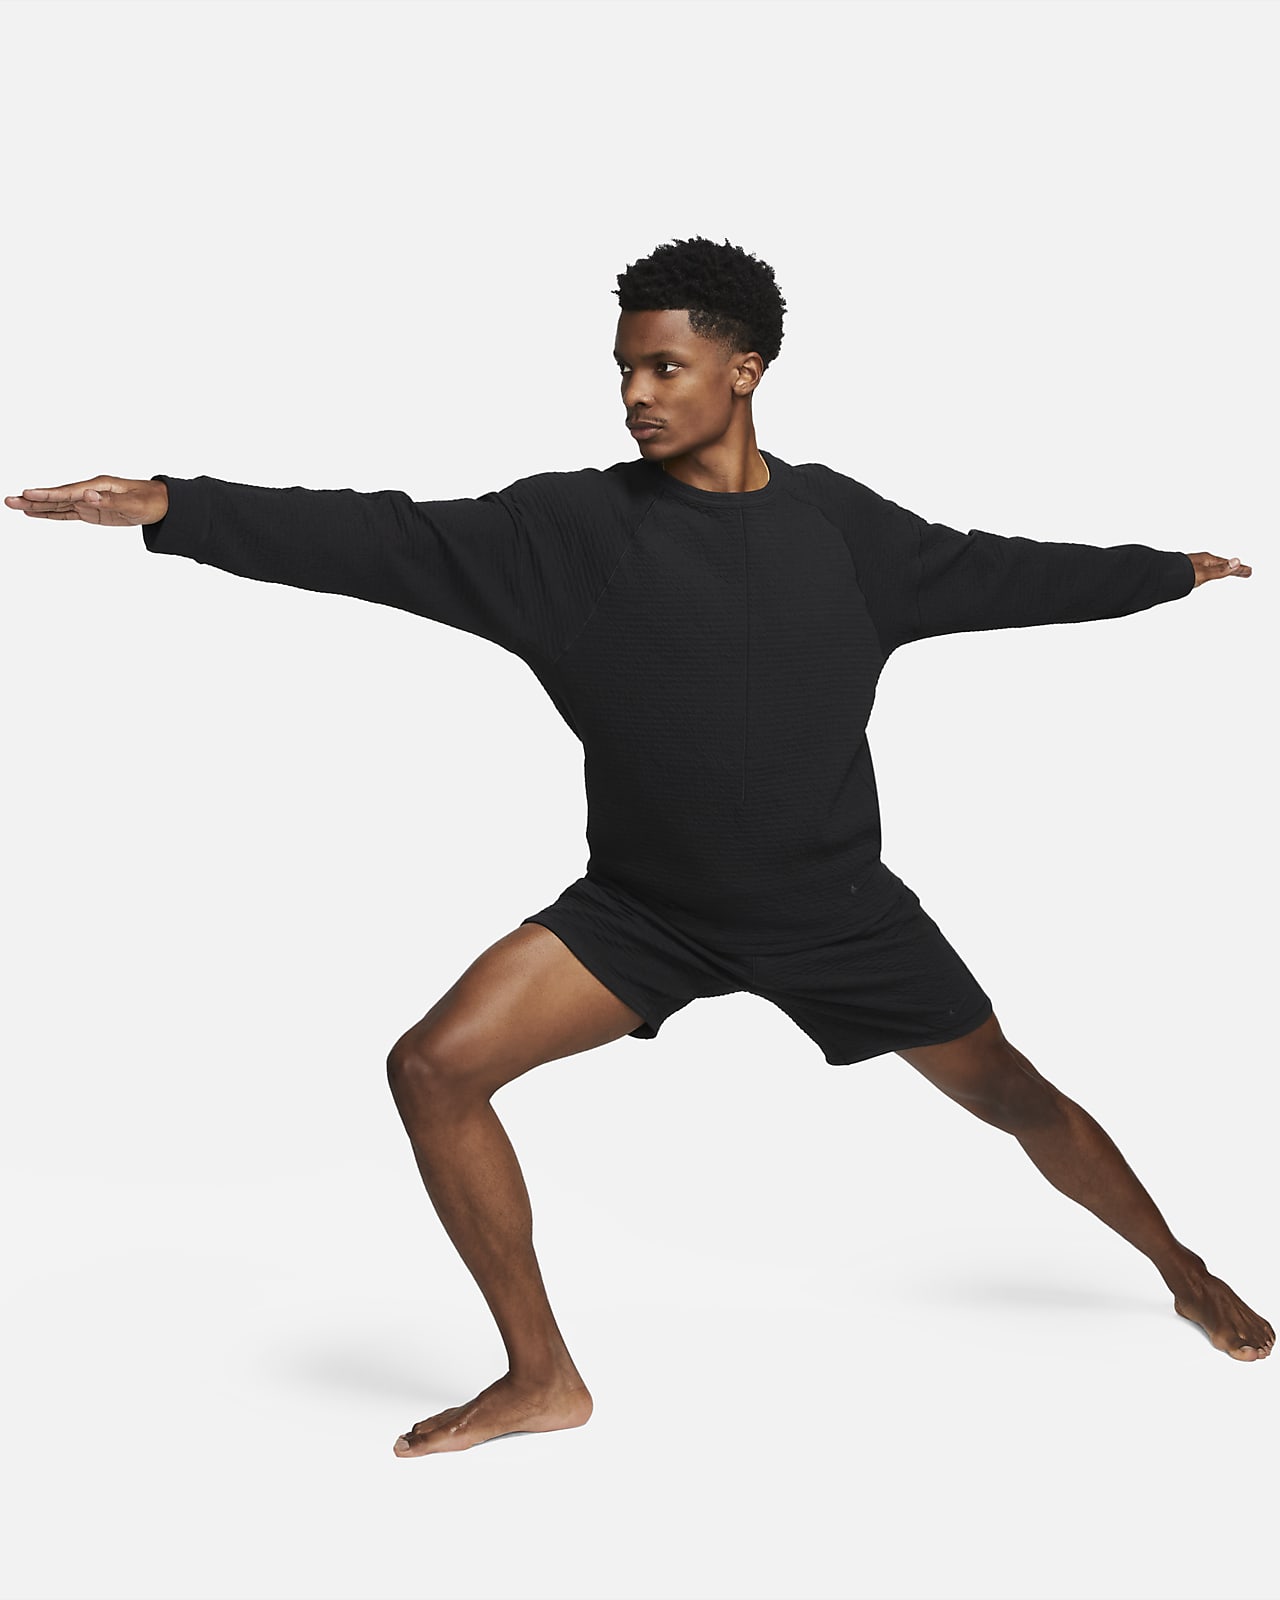 Nike Yoga Dri-FIT Men's Shorts, Black, Large : : Clothing